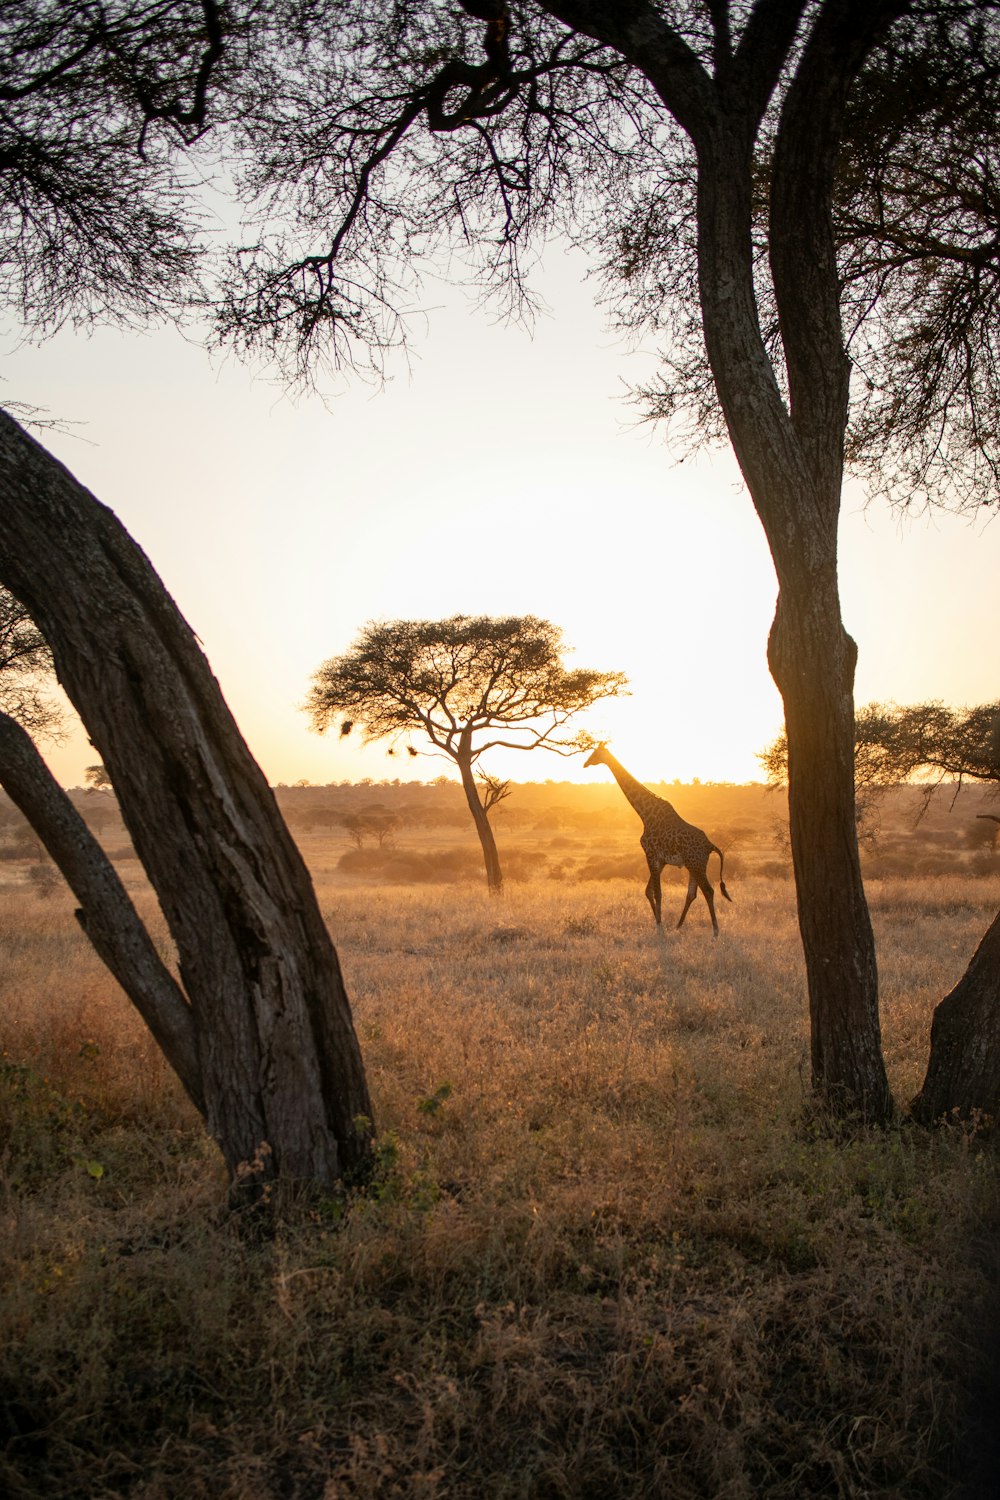 a giraffe running through a field next to trees